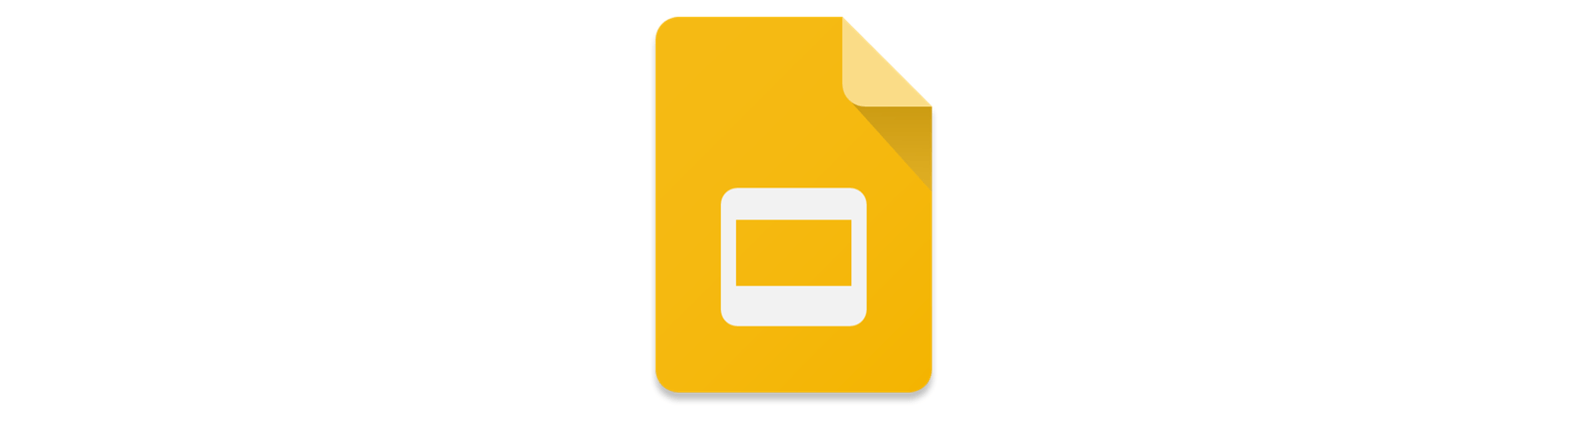 Logo for Google Slides